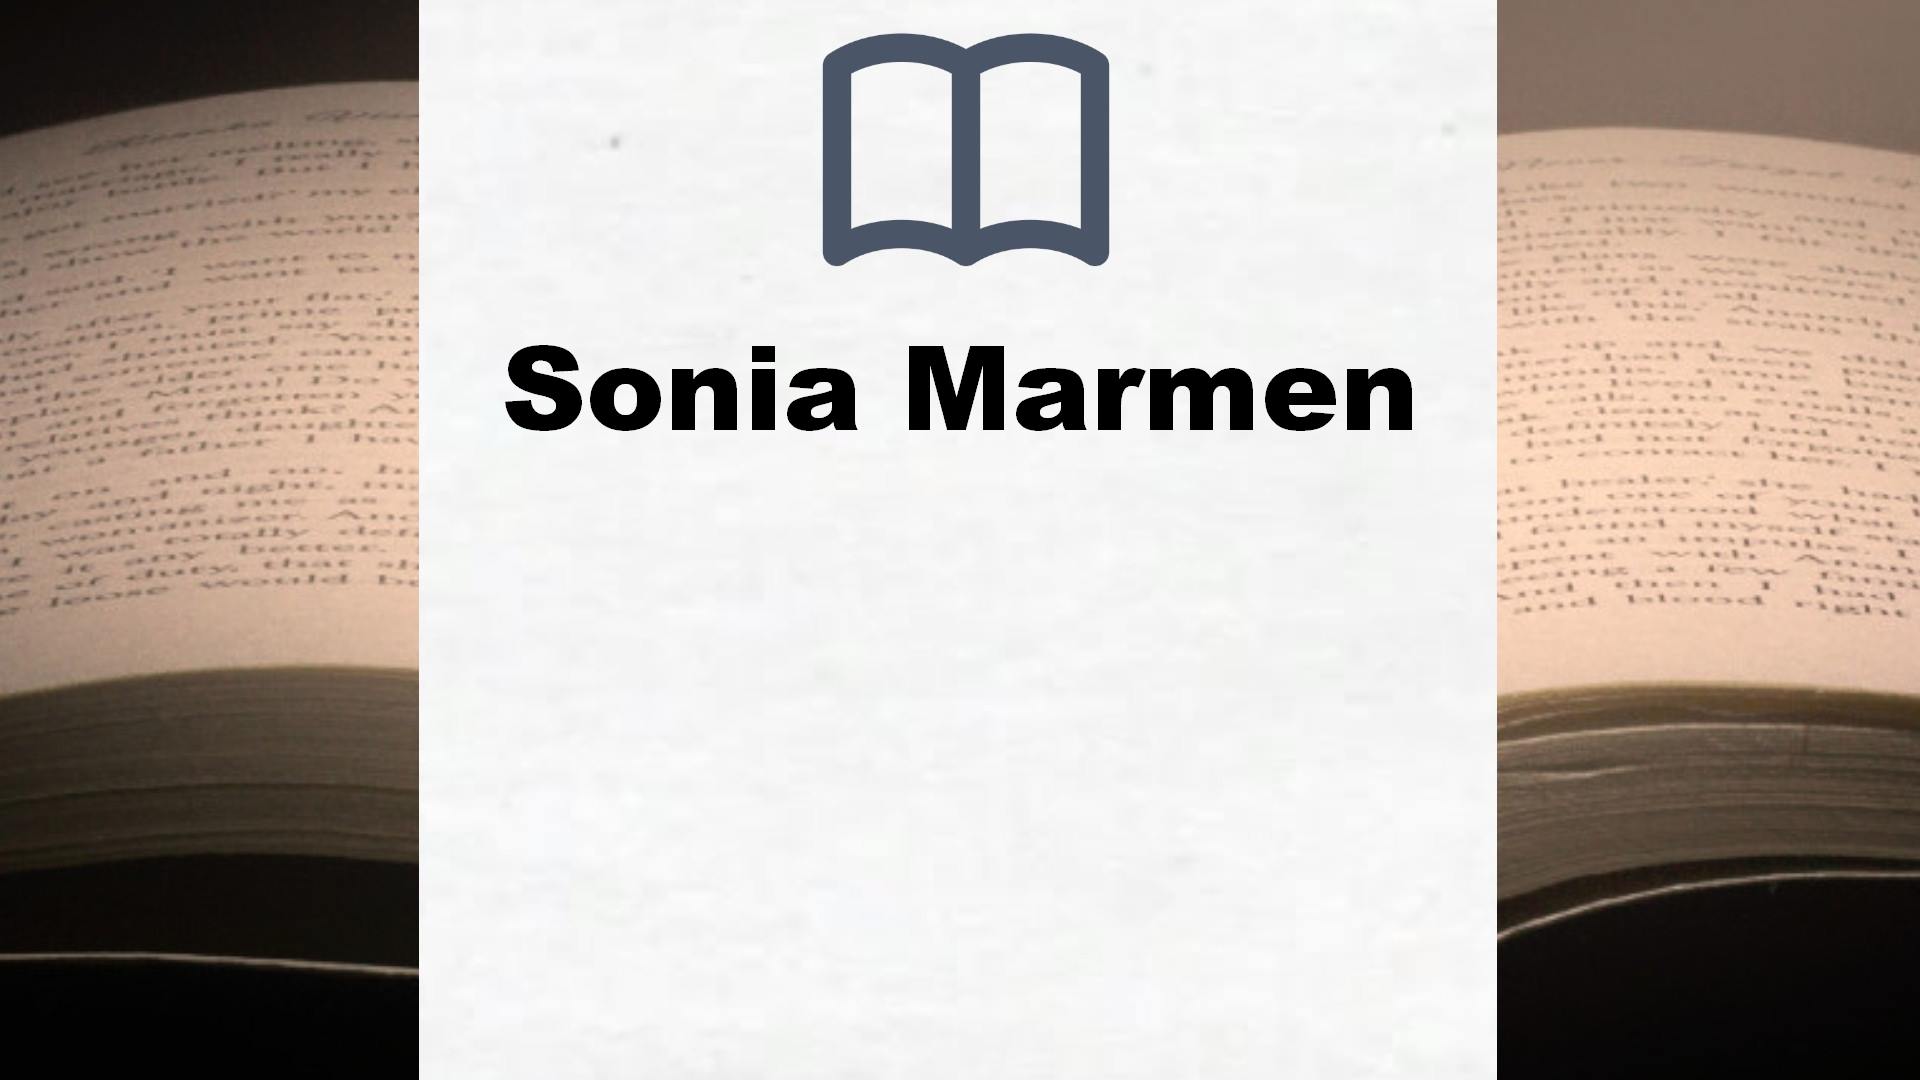 Libros Sonia Marmen